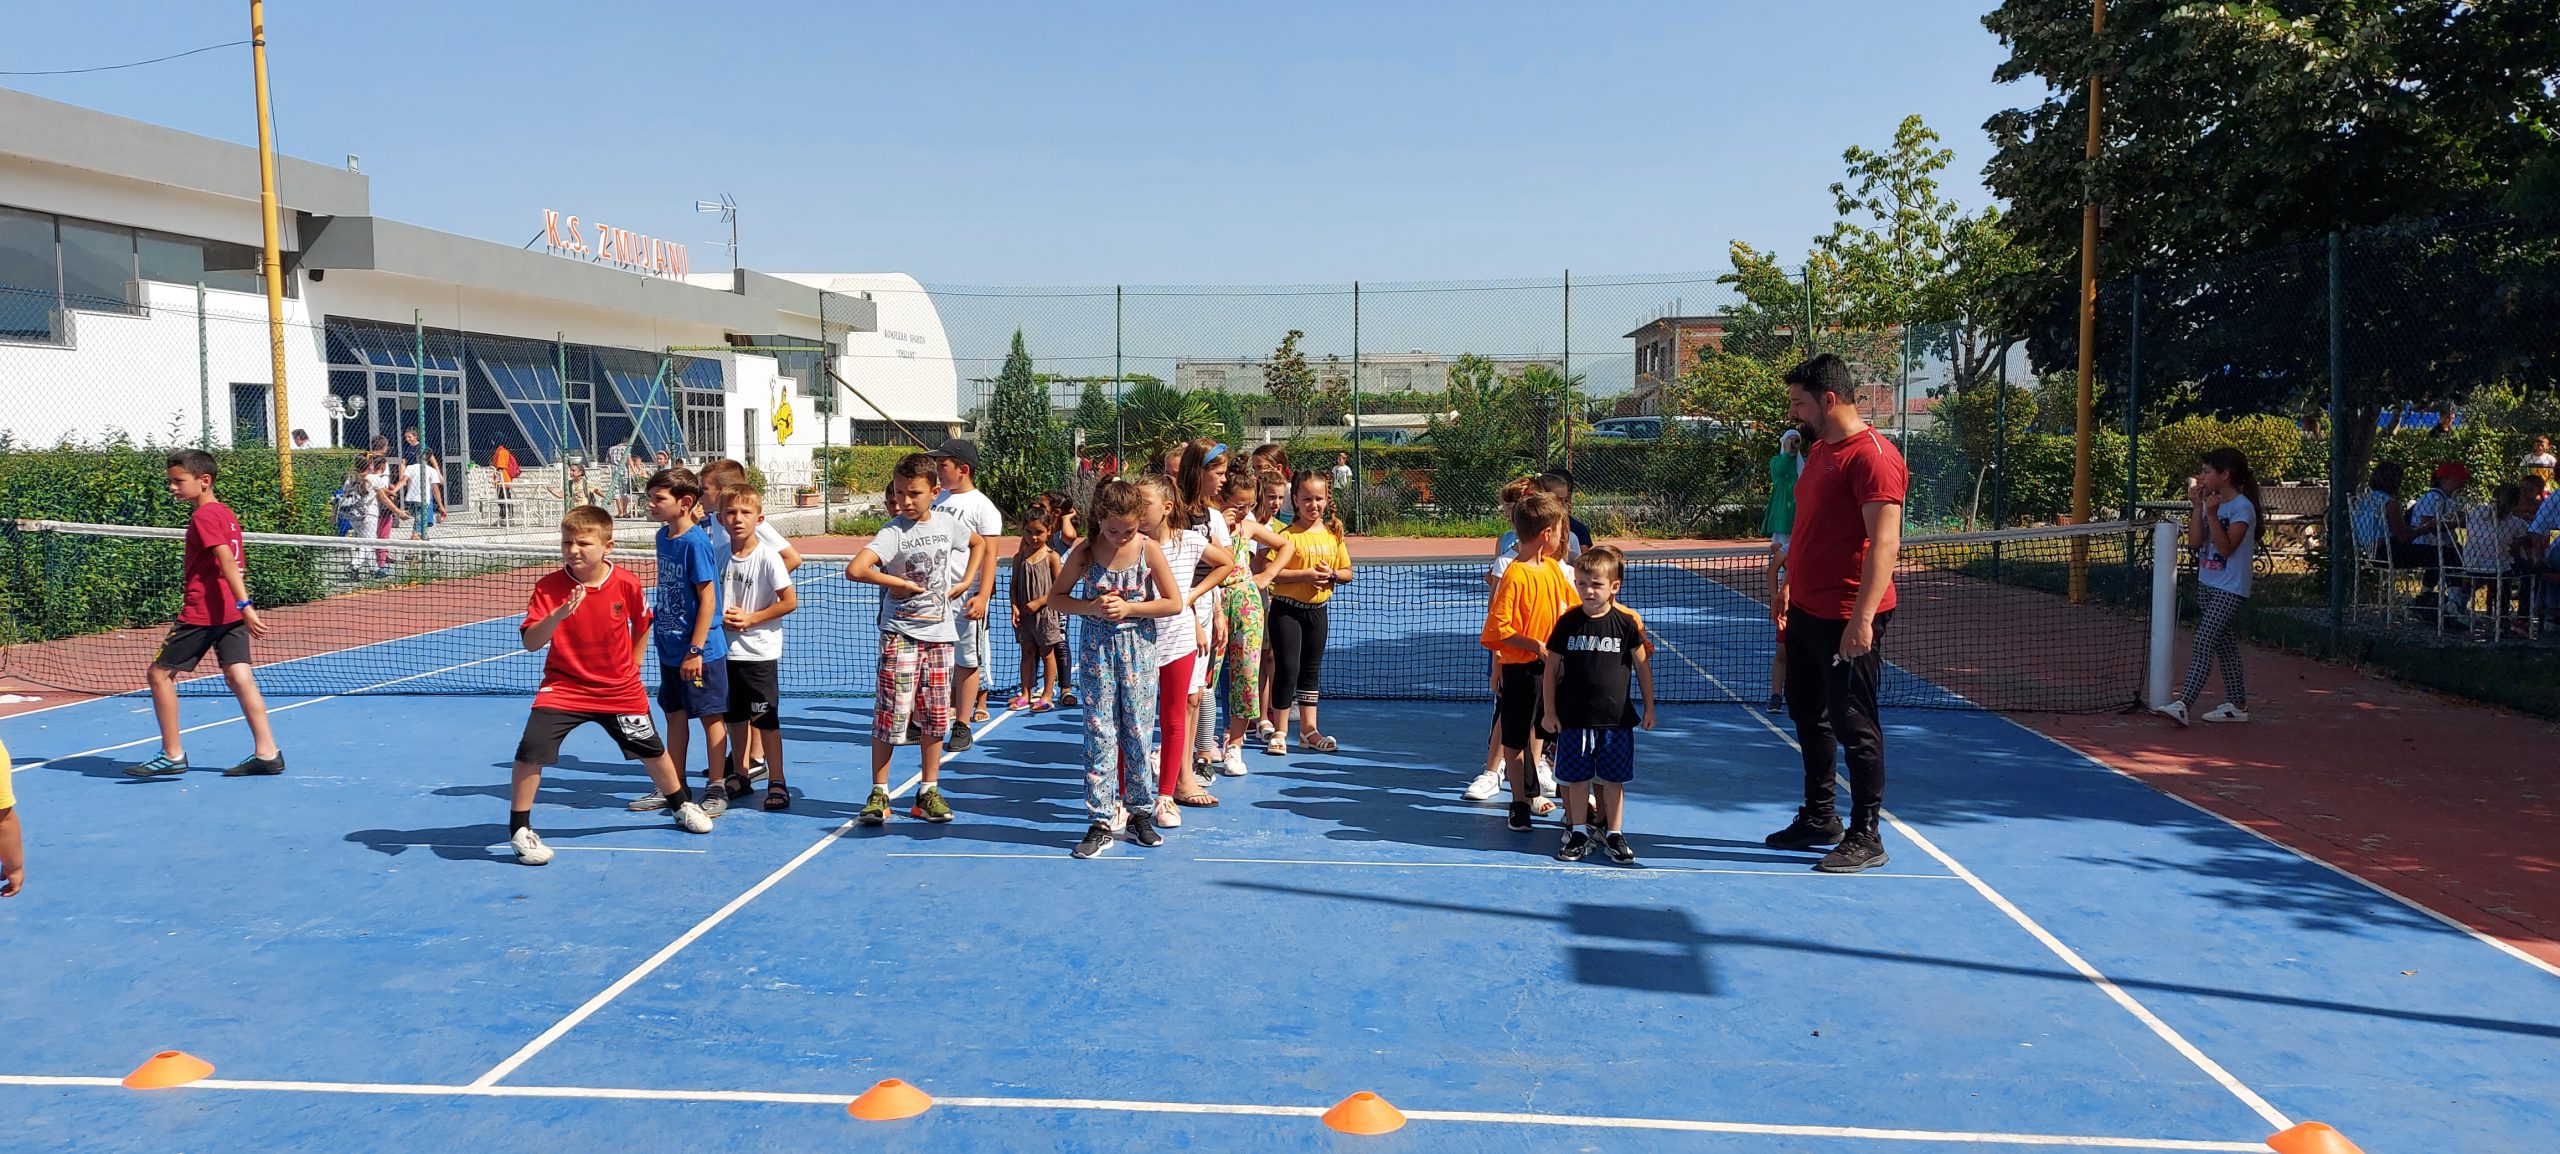 Aktiviteti i madh i Konkursit të 10-të me nxënësit e mejtepeve të xhamive të Shkodrës